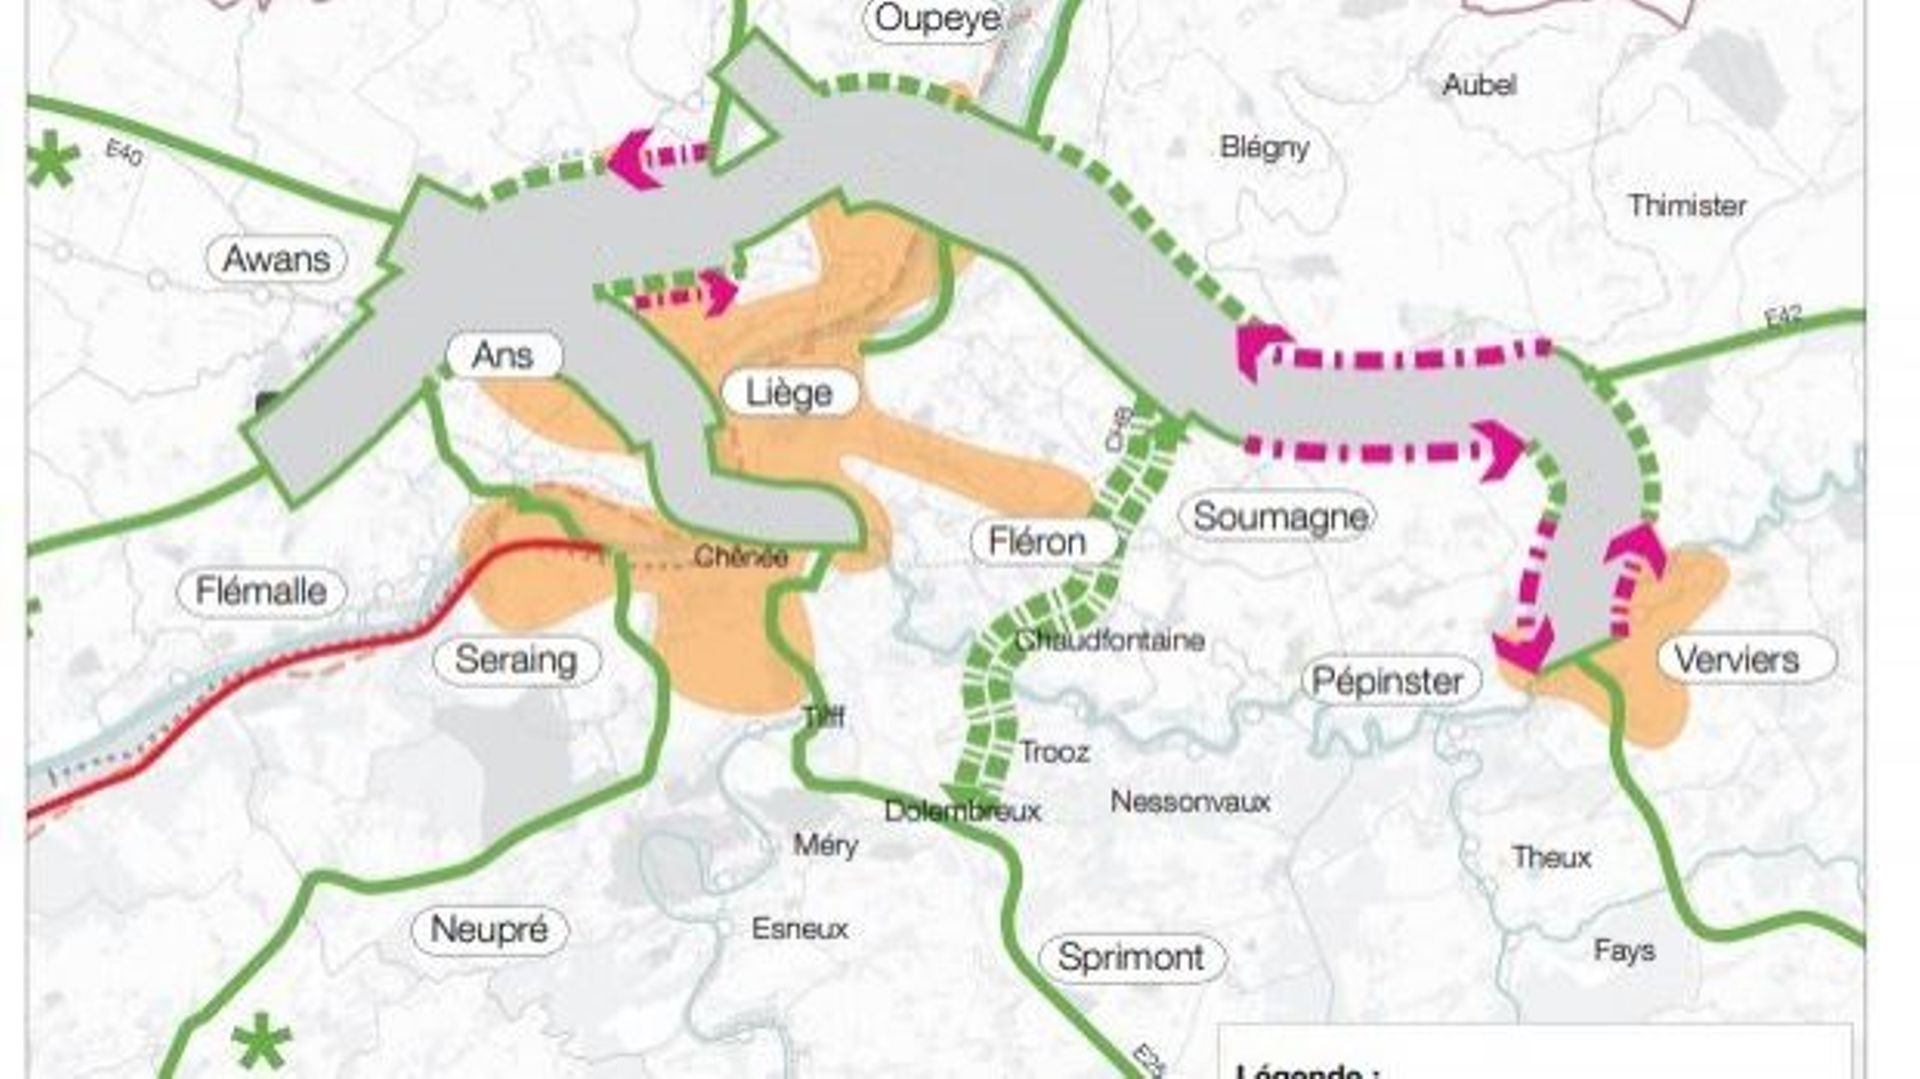 Le conseil d'Etat refuse d'invalider le plan urbain de mobilité de l'agglomération liégeoise